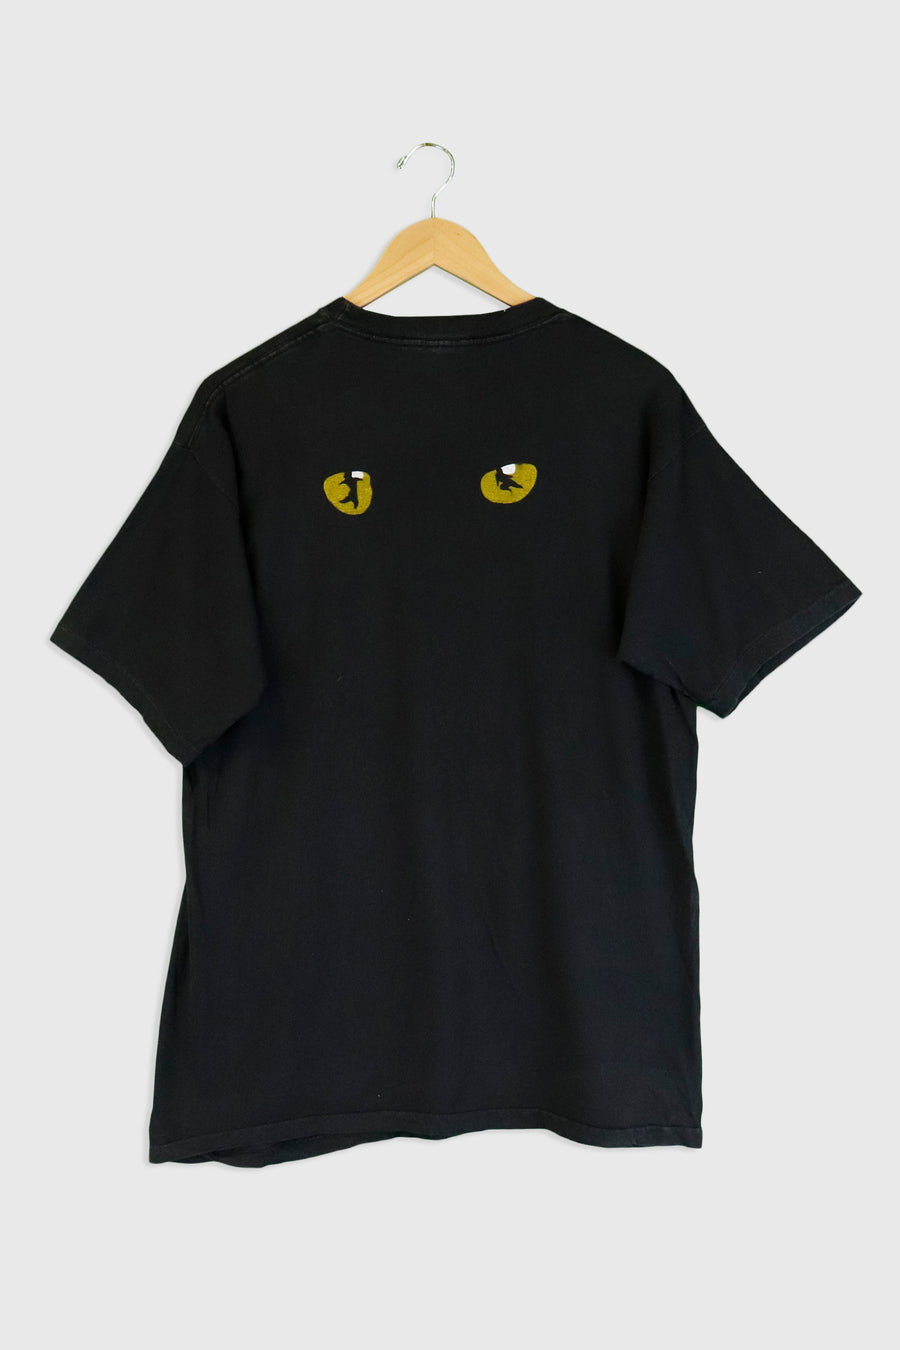 Vintage 1981 Cats London Tour T Shirt